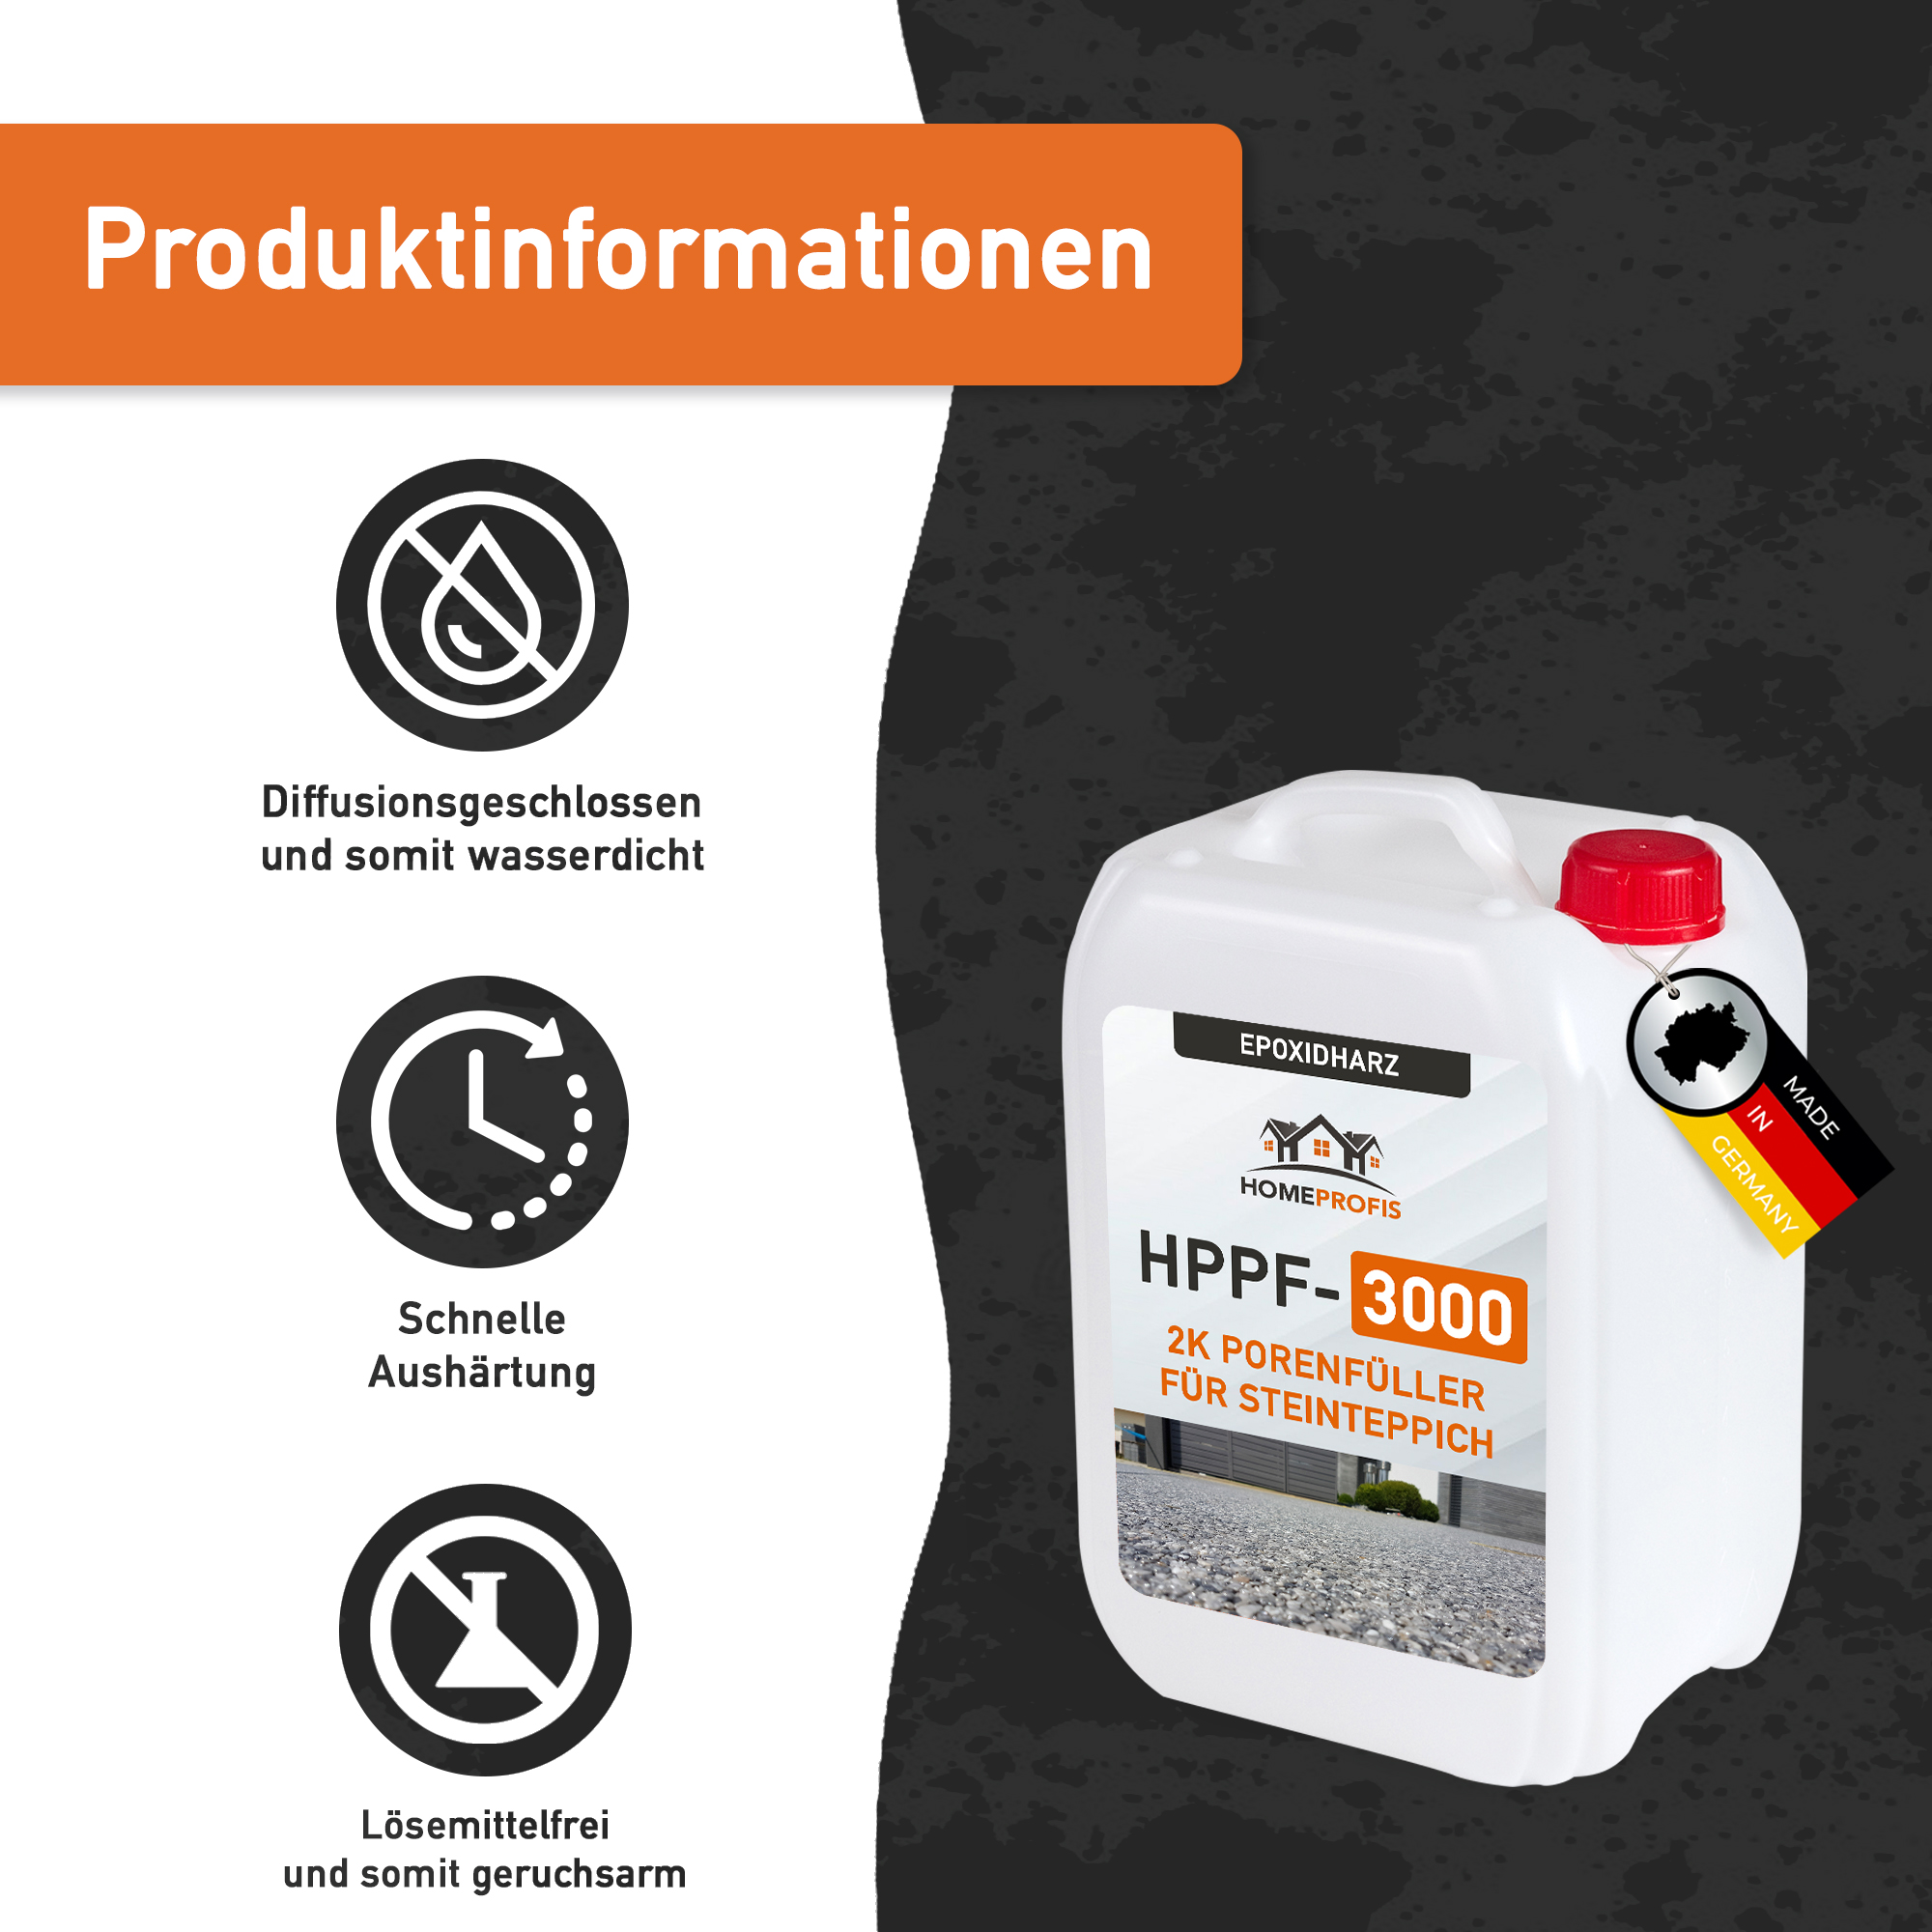 HPPF-3000 2K Epoxidharz Porenfüller für Steinteppiche